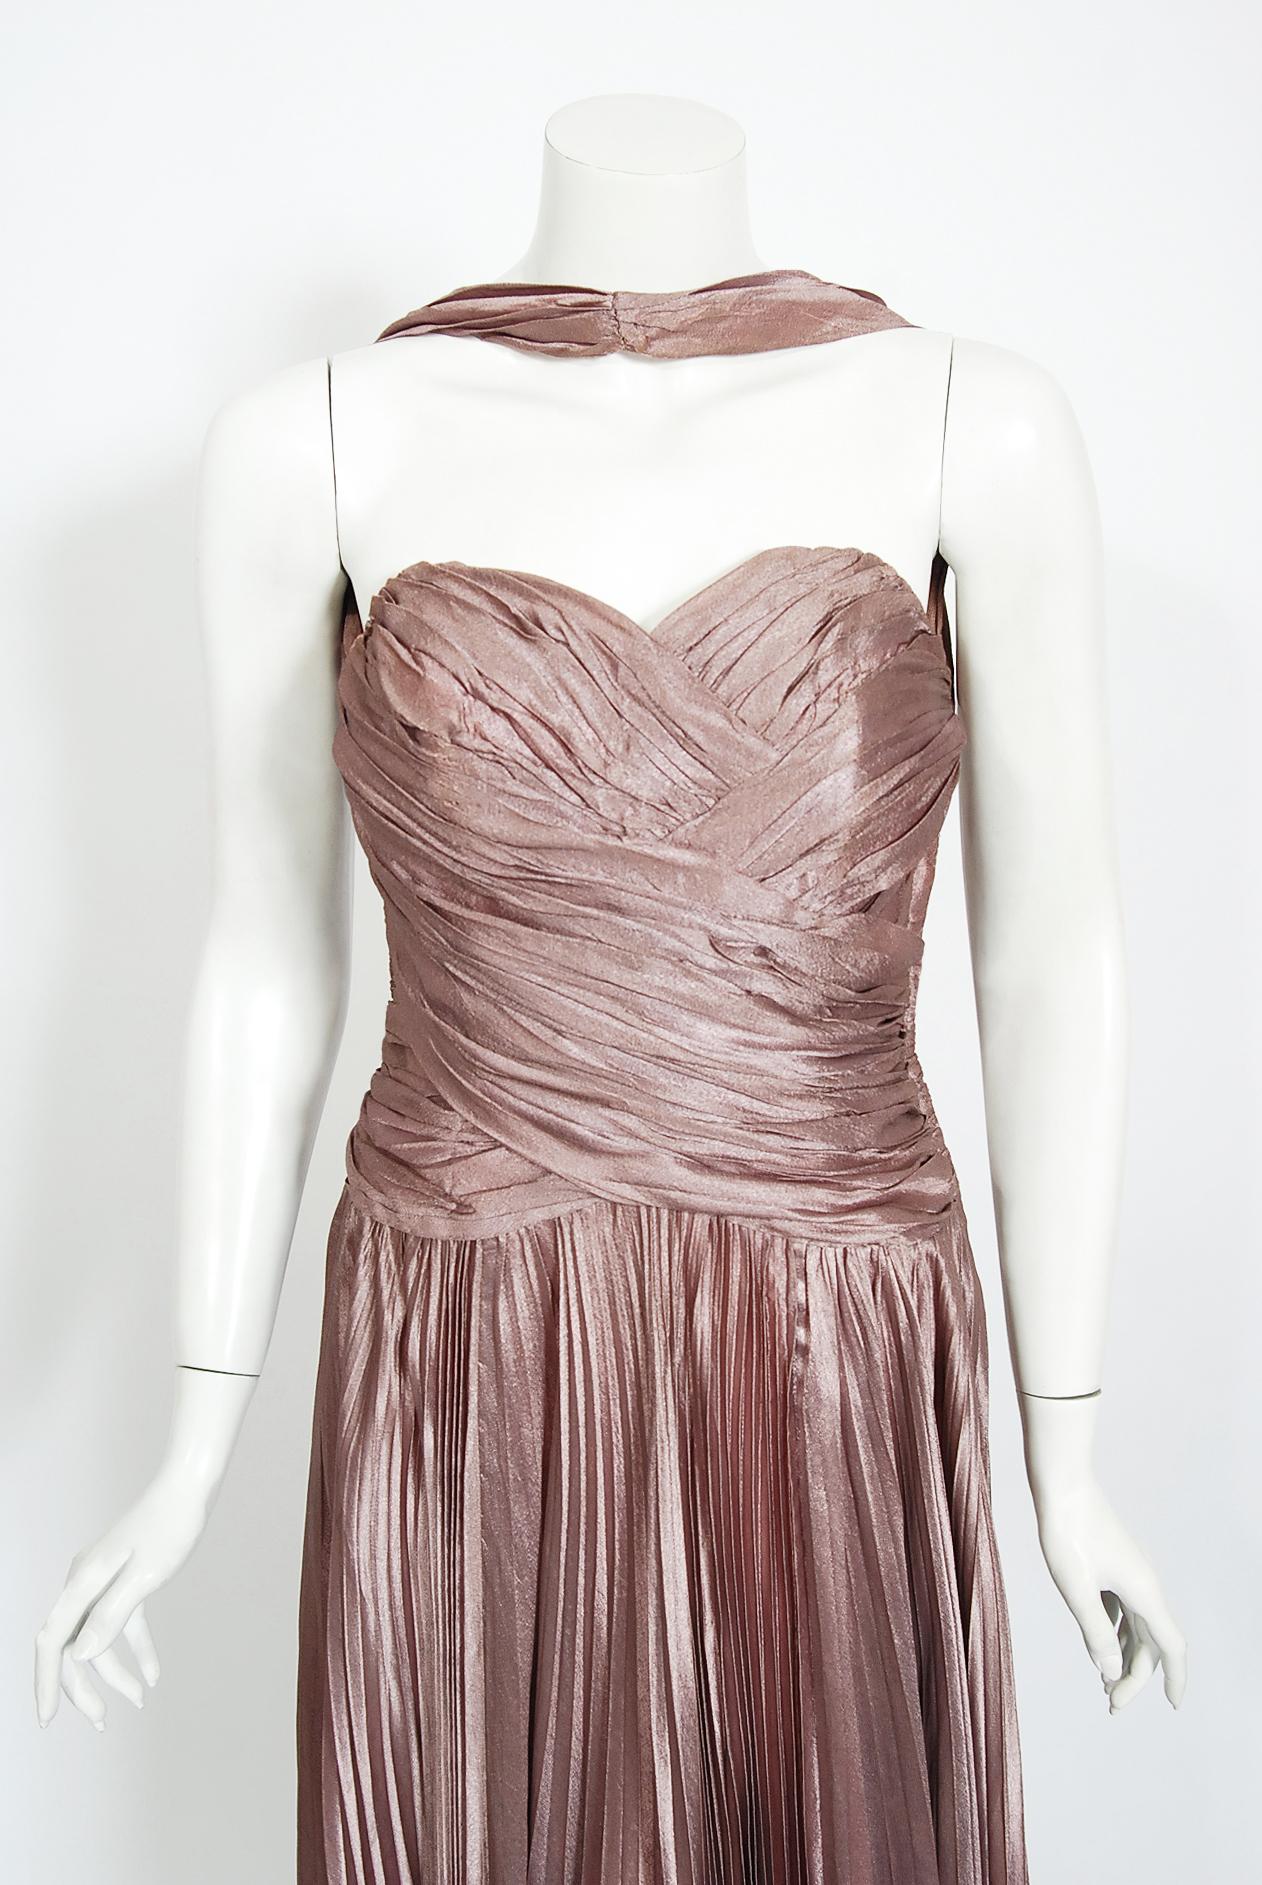 Une magnifique robe de soirée du milieu du siècle dernier, créée par la maison de couture londonienne Marjon Couture. Le tissu utilisé est de la plus haute qualité ; une soie doublée d'un mauve léger et chatoyant. Le corsage de cette robe est un